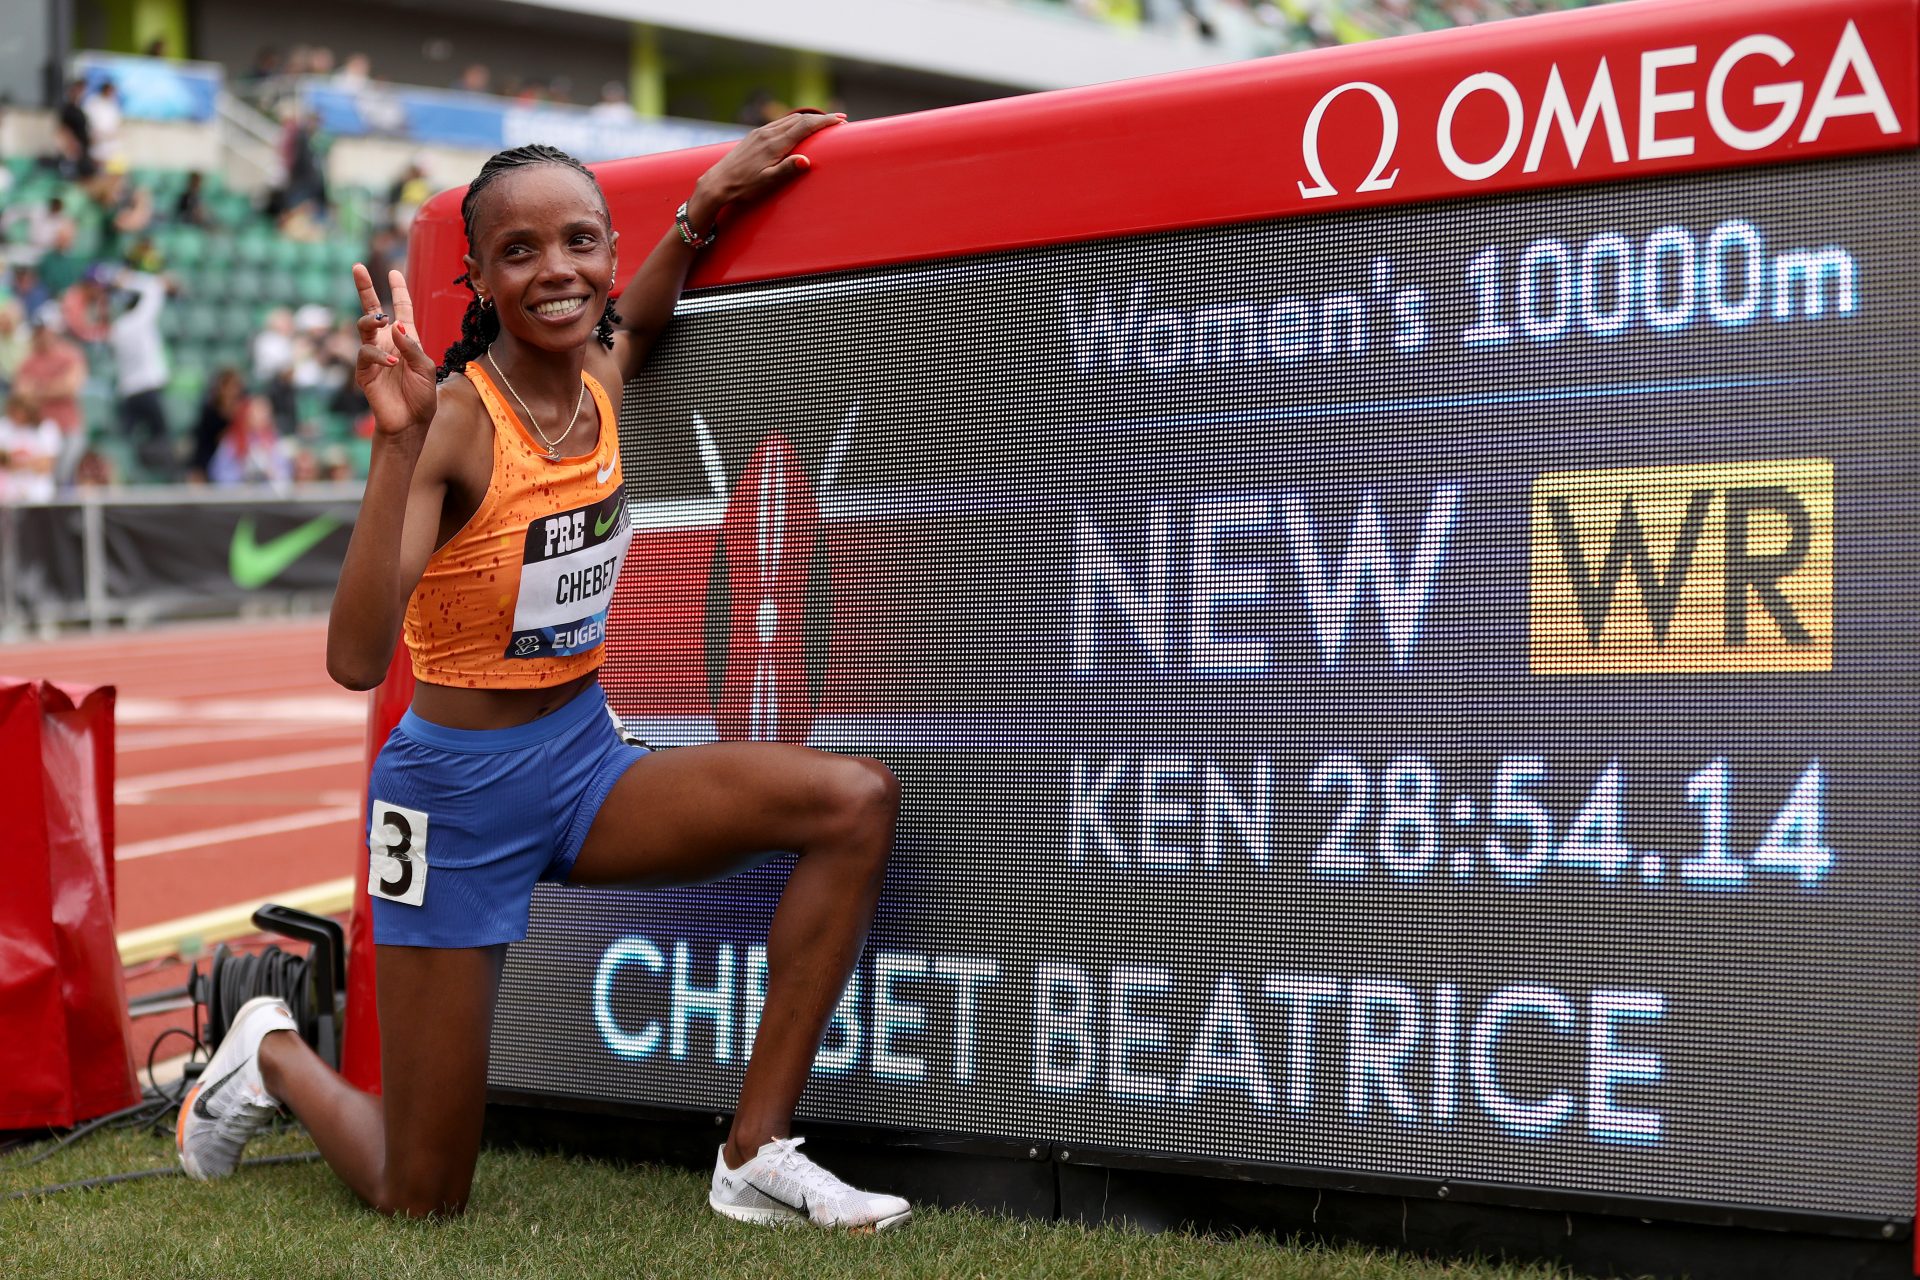 Women's 10,000m: 28:54.14 - Beatrice Chebet